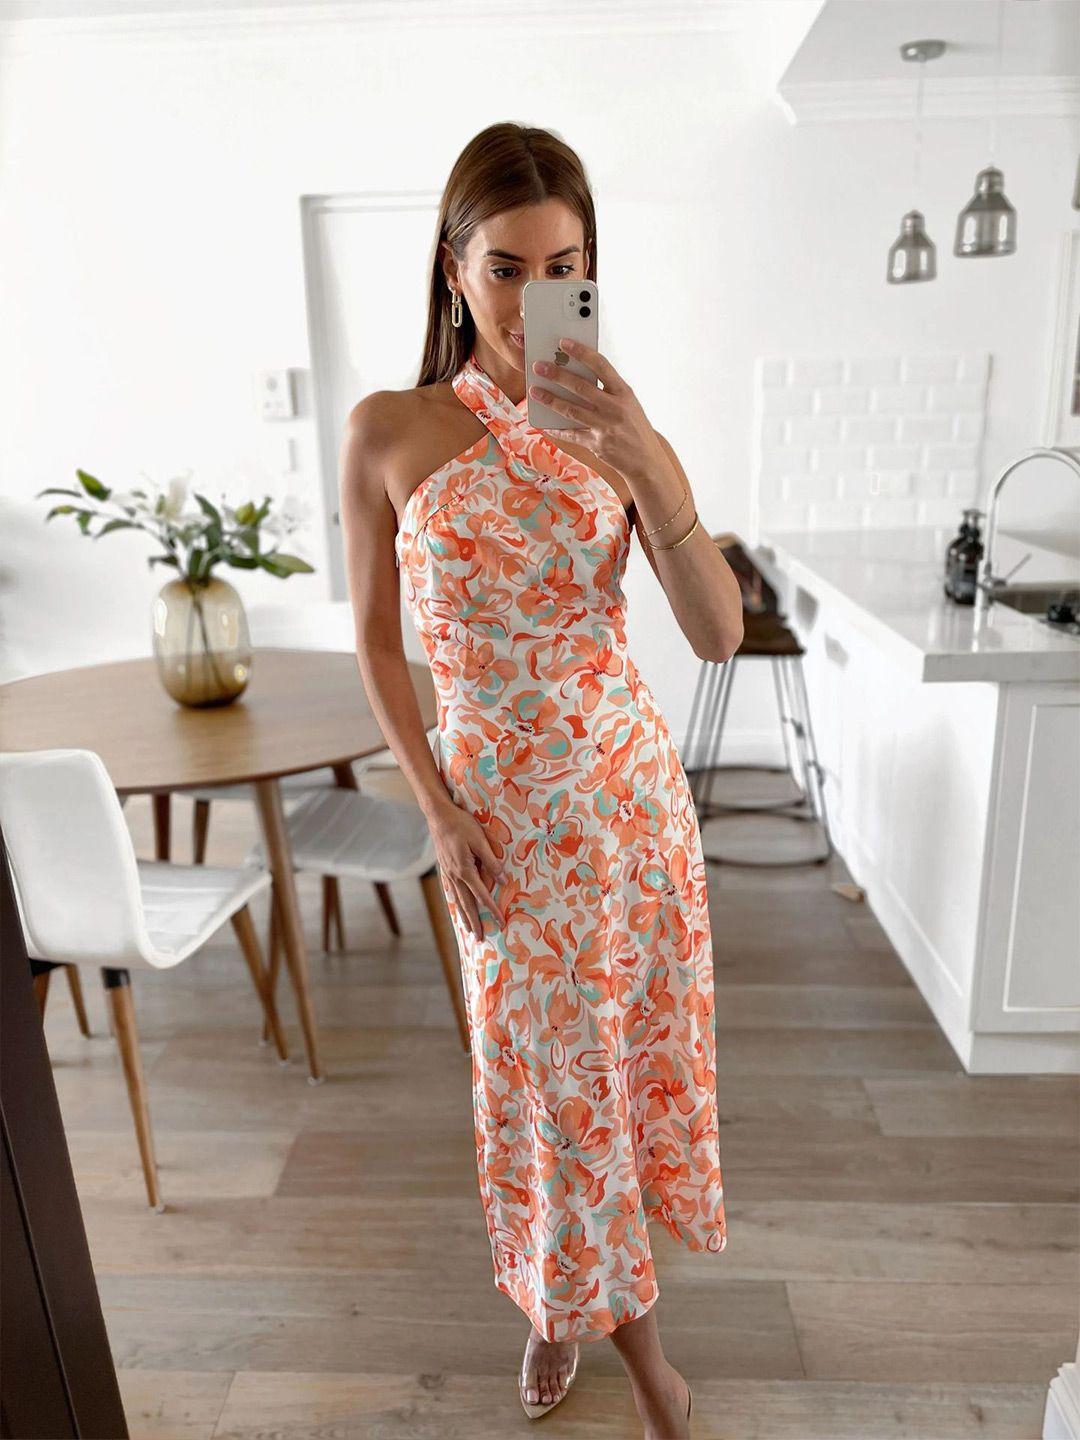 bostreet orange floral printed halter neck a-line dress